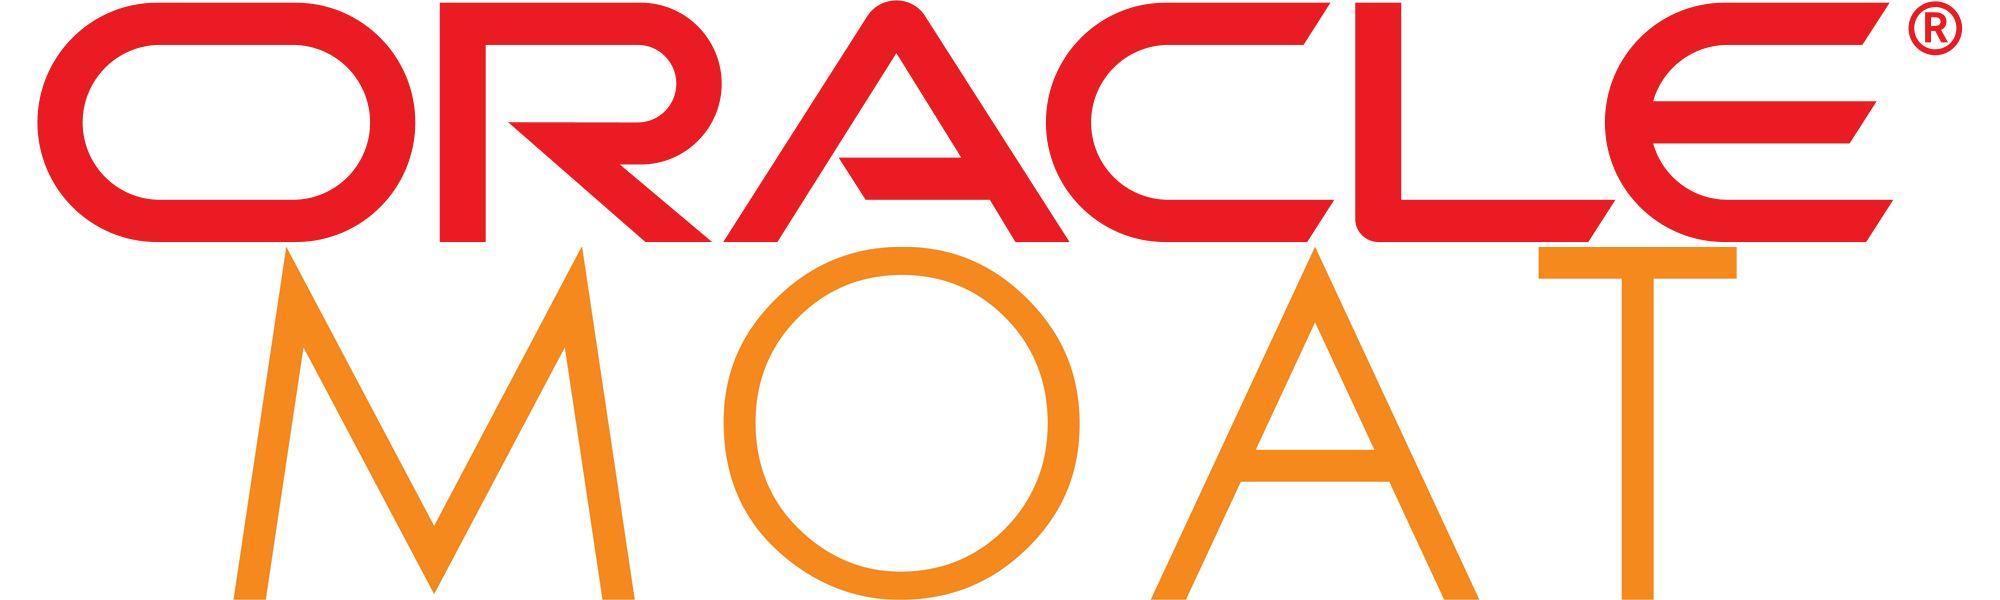 Moat Logo - Oracle en passe d'acquérir Moat | Offremedia